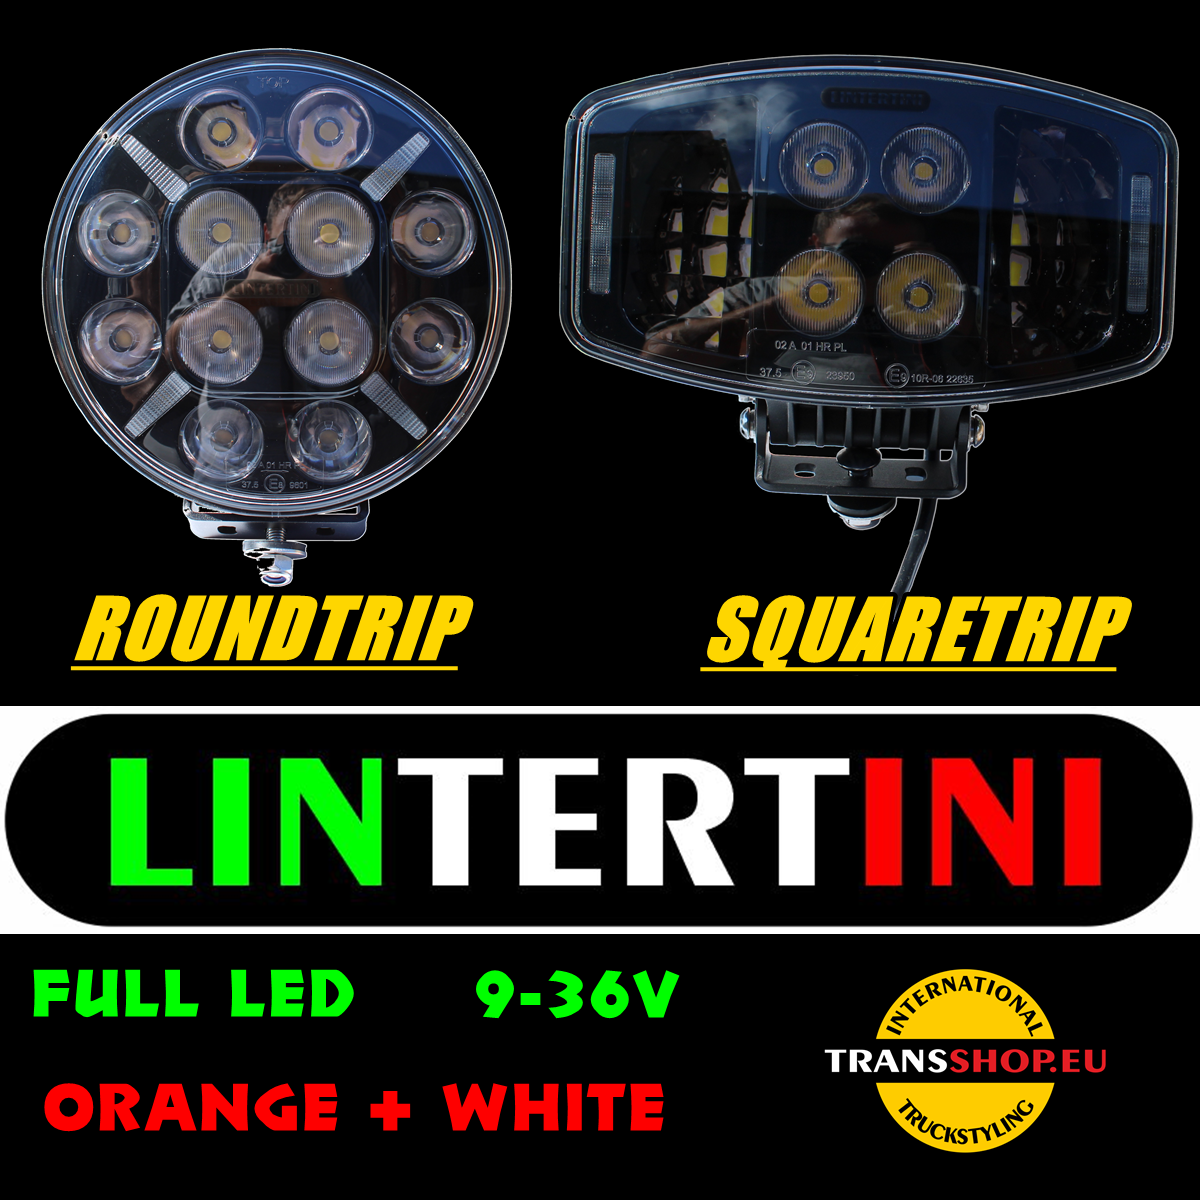 Novinka od společnosti Lintertini - LED halogeny s dlouhým dosahem s oranžovým umístěním.